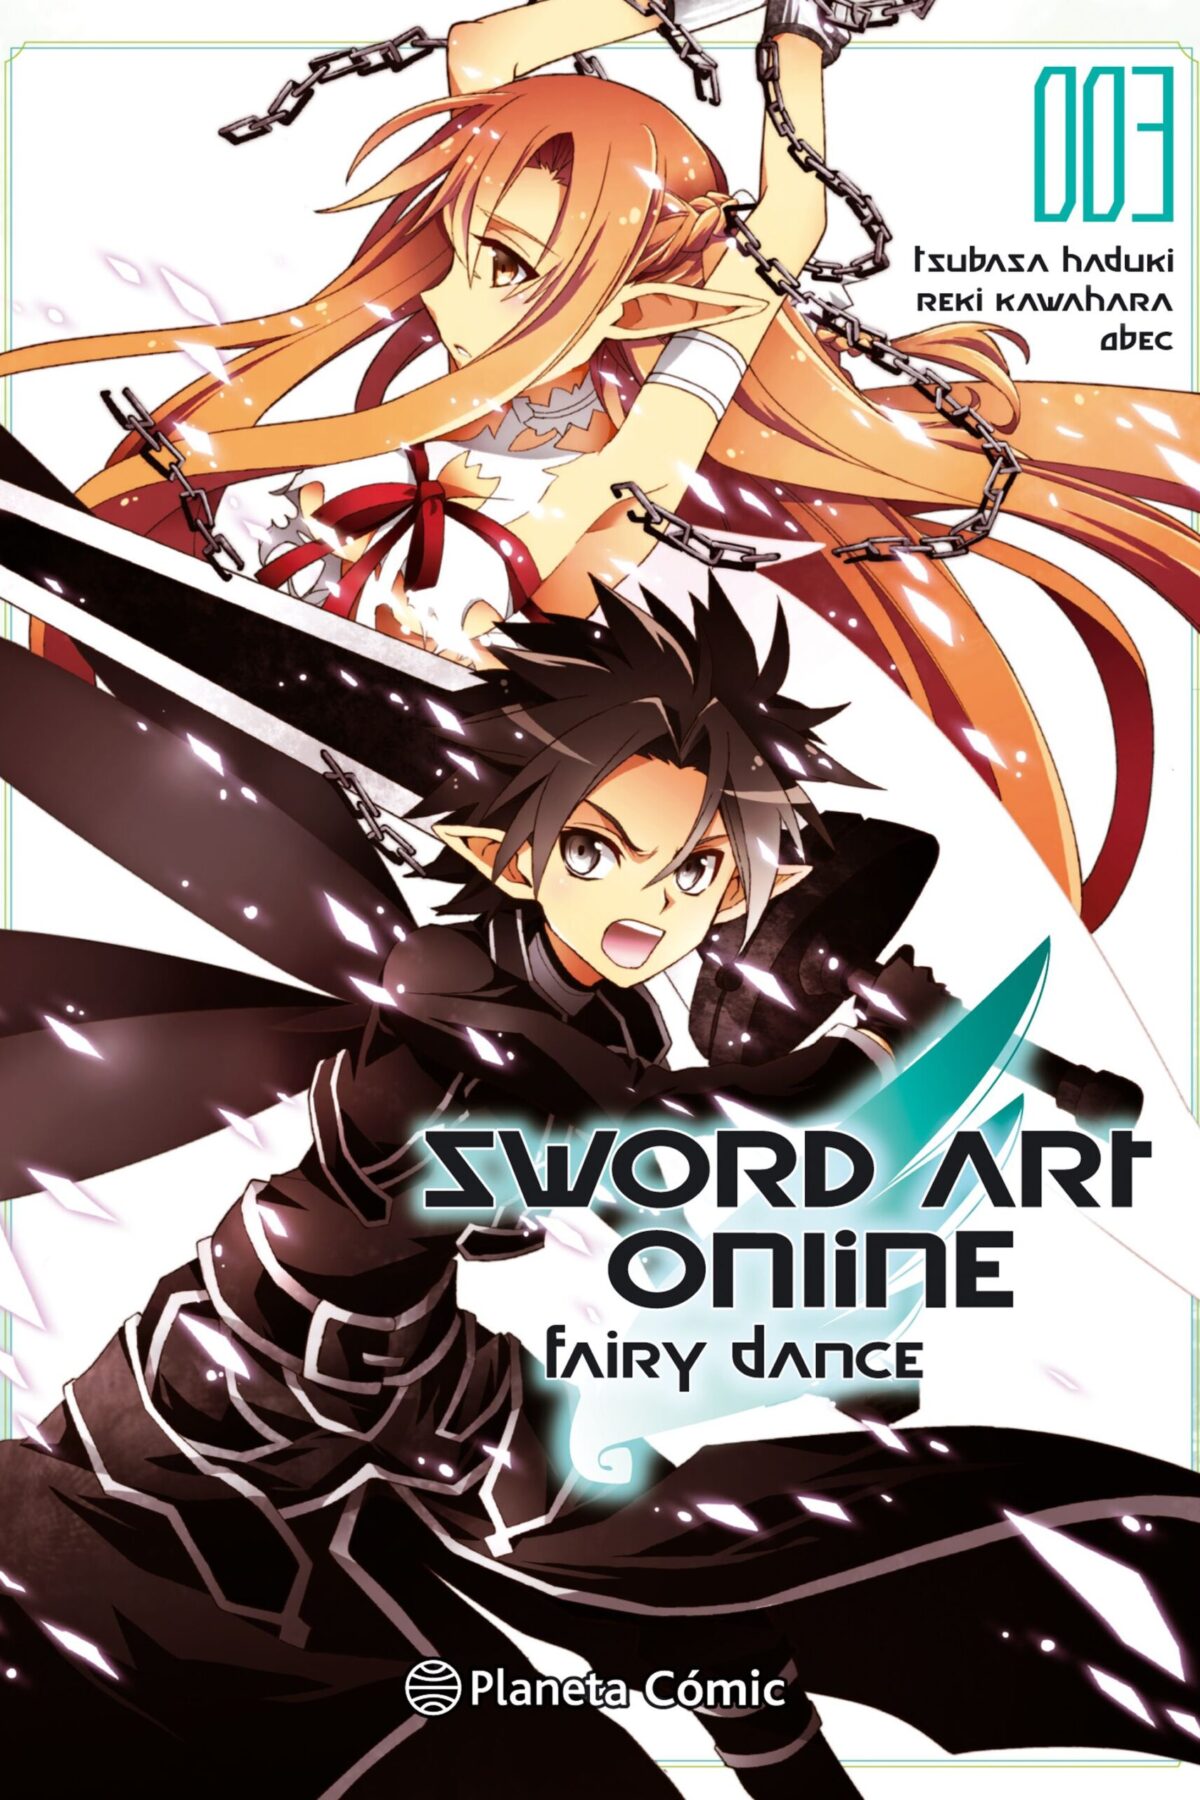 Manga Sword Art Online Fairy Dance 03